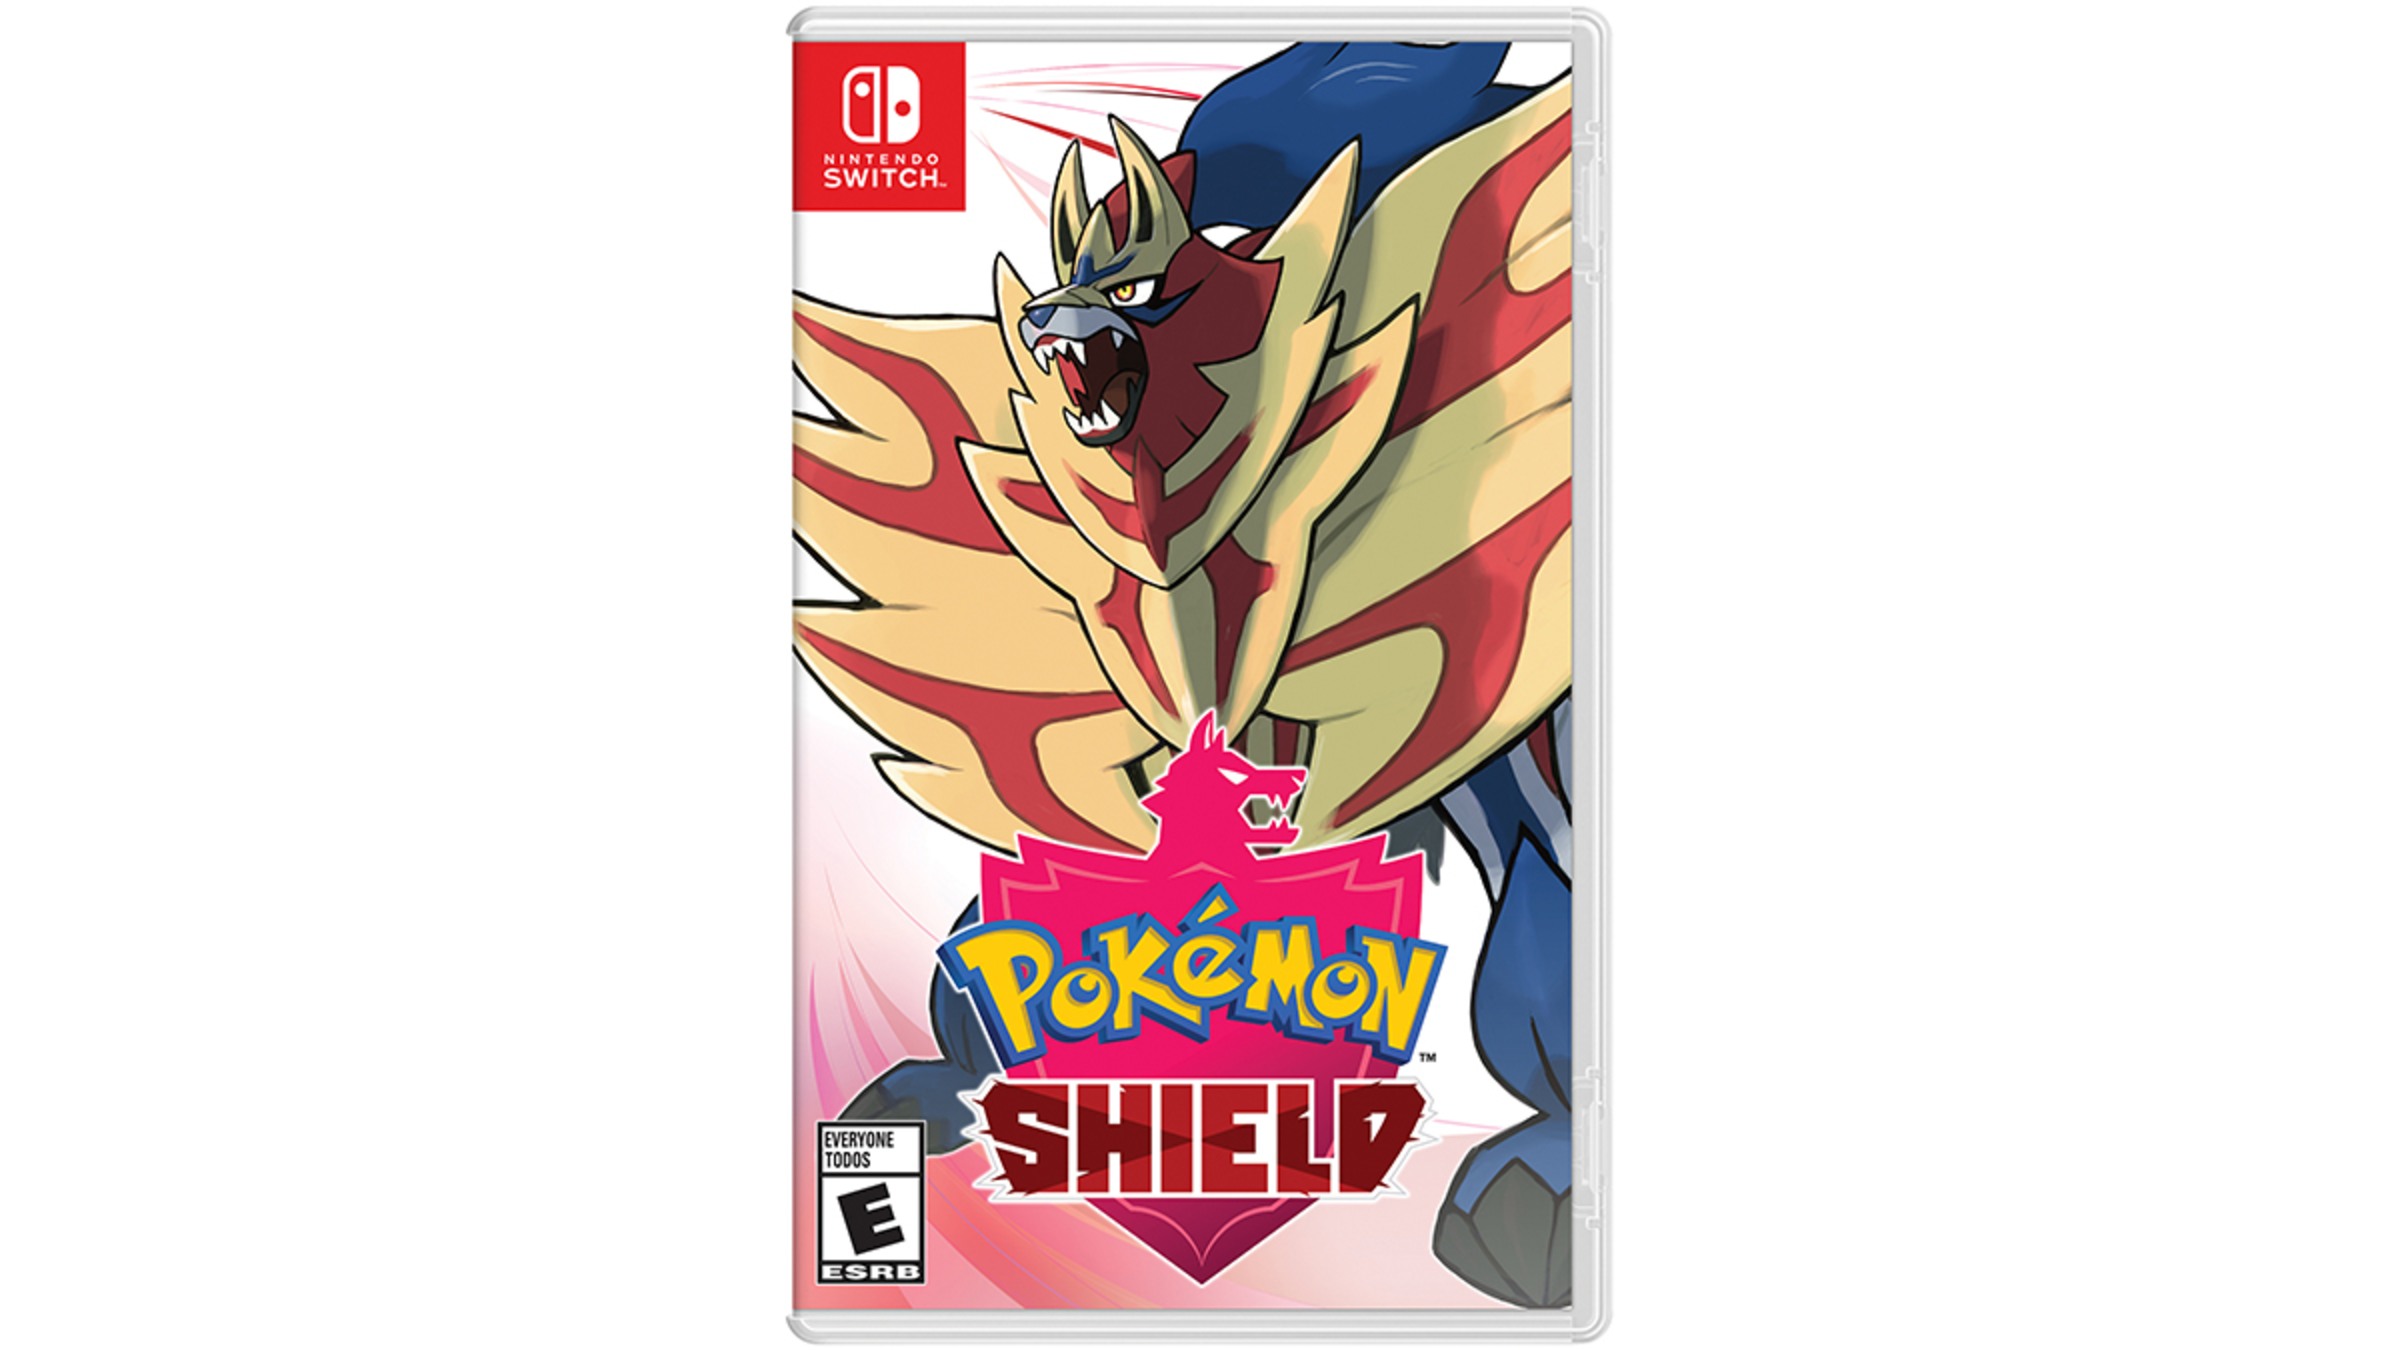 Nintendo Switch Pokémon Shield + Pokémon Shield Expansion Pass